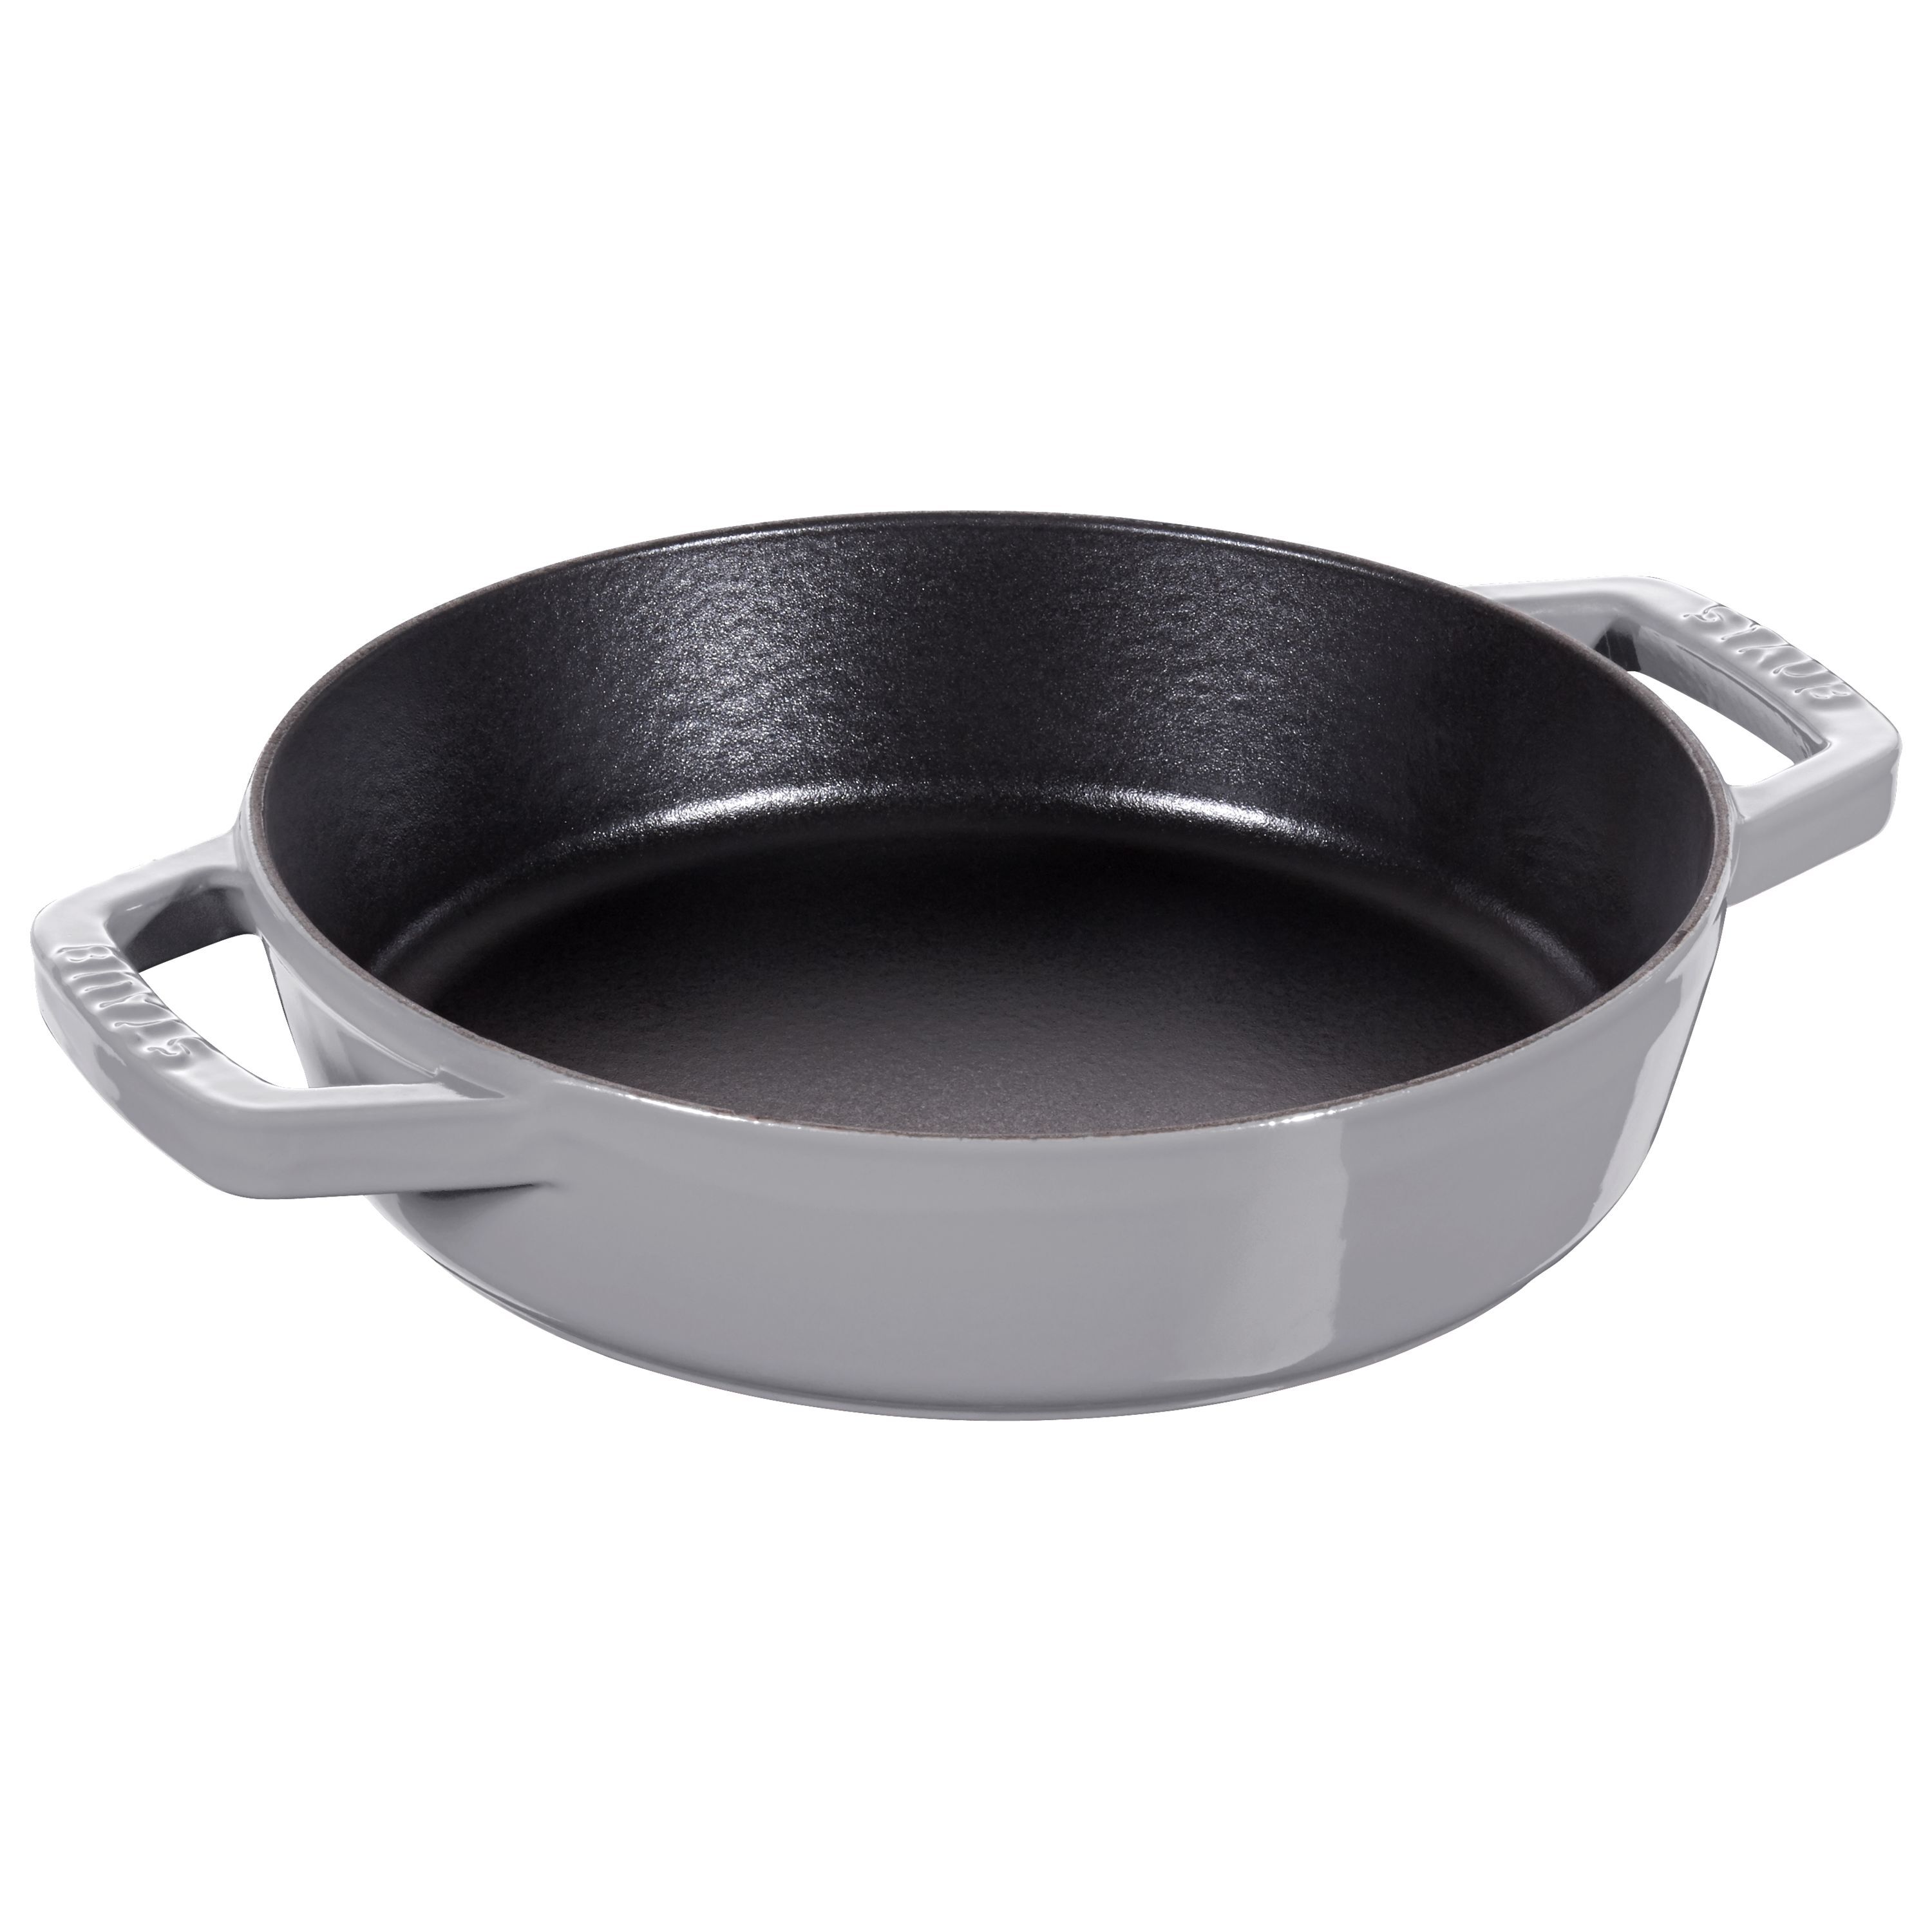 20 inch frying pan